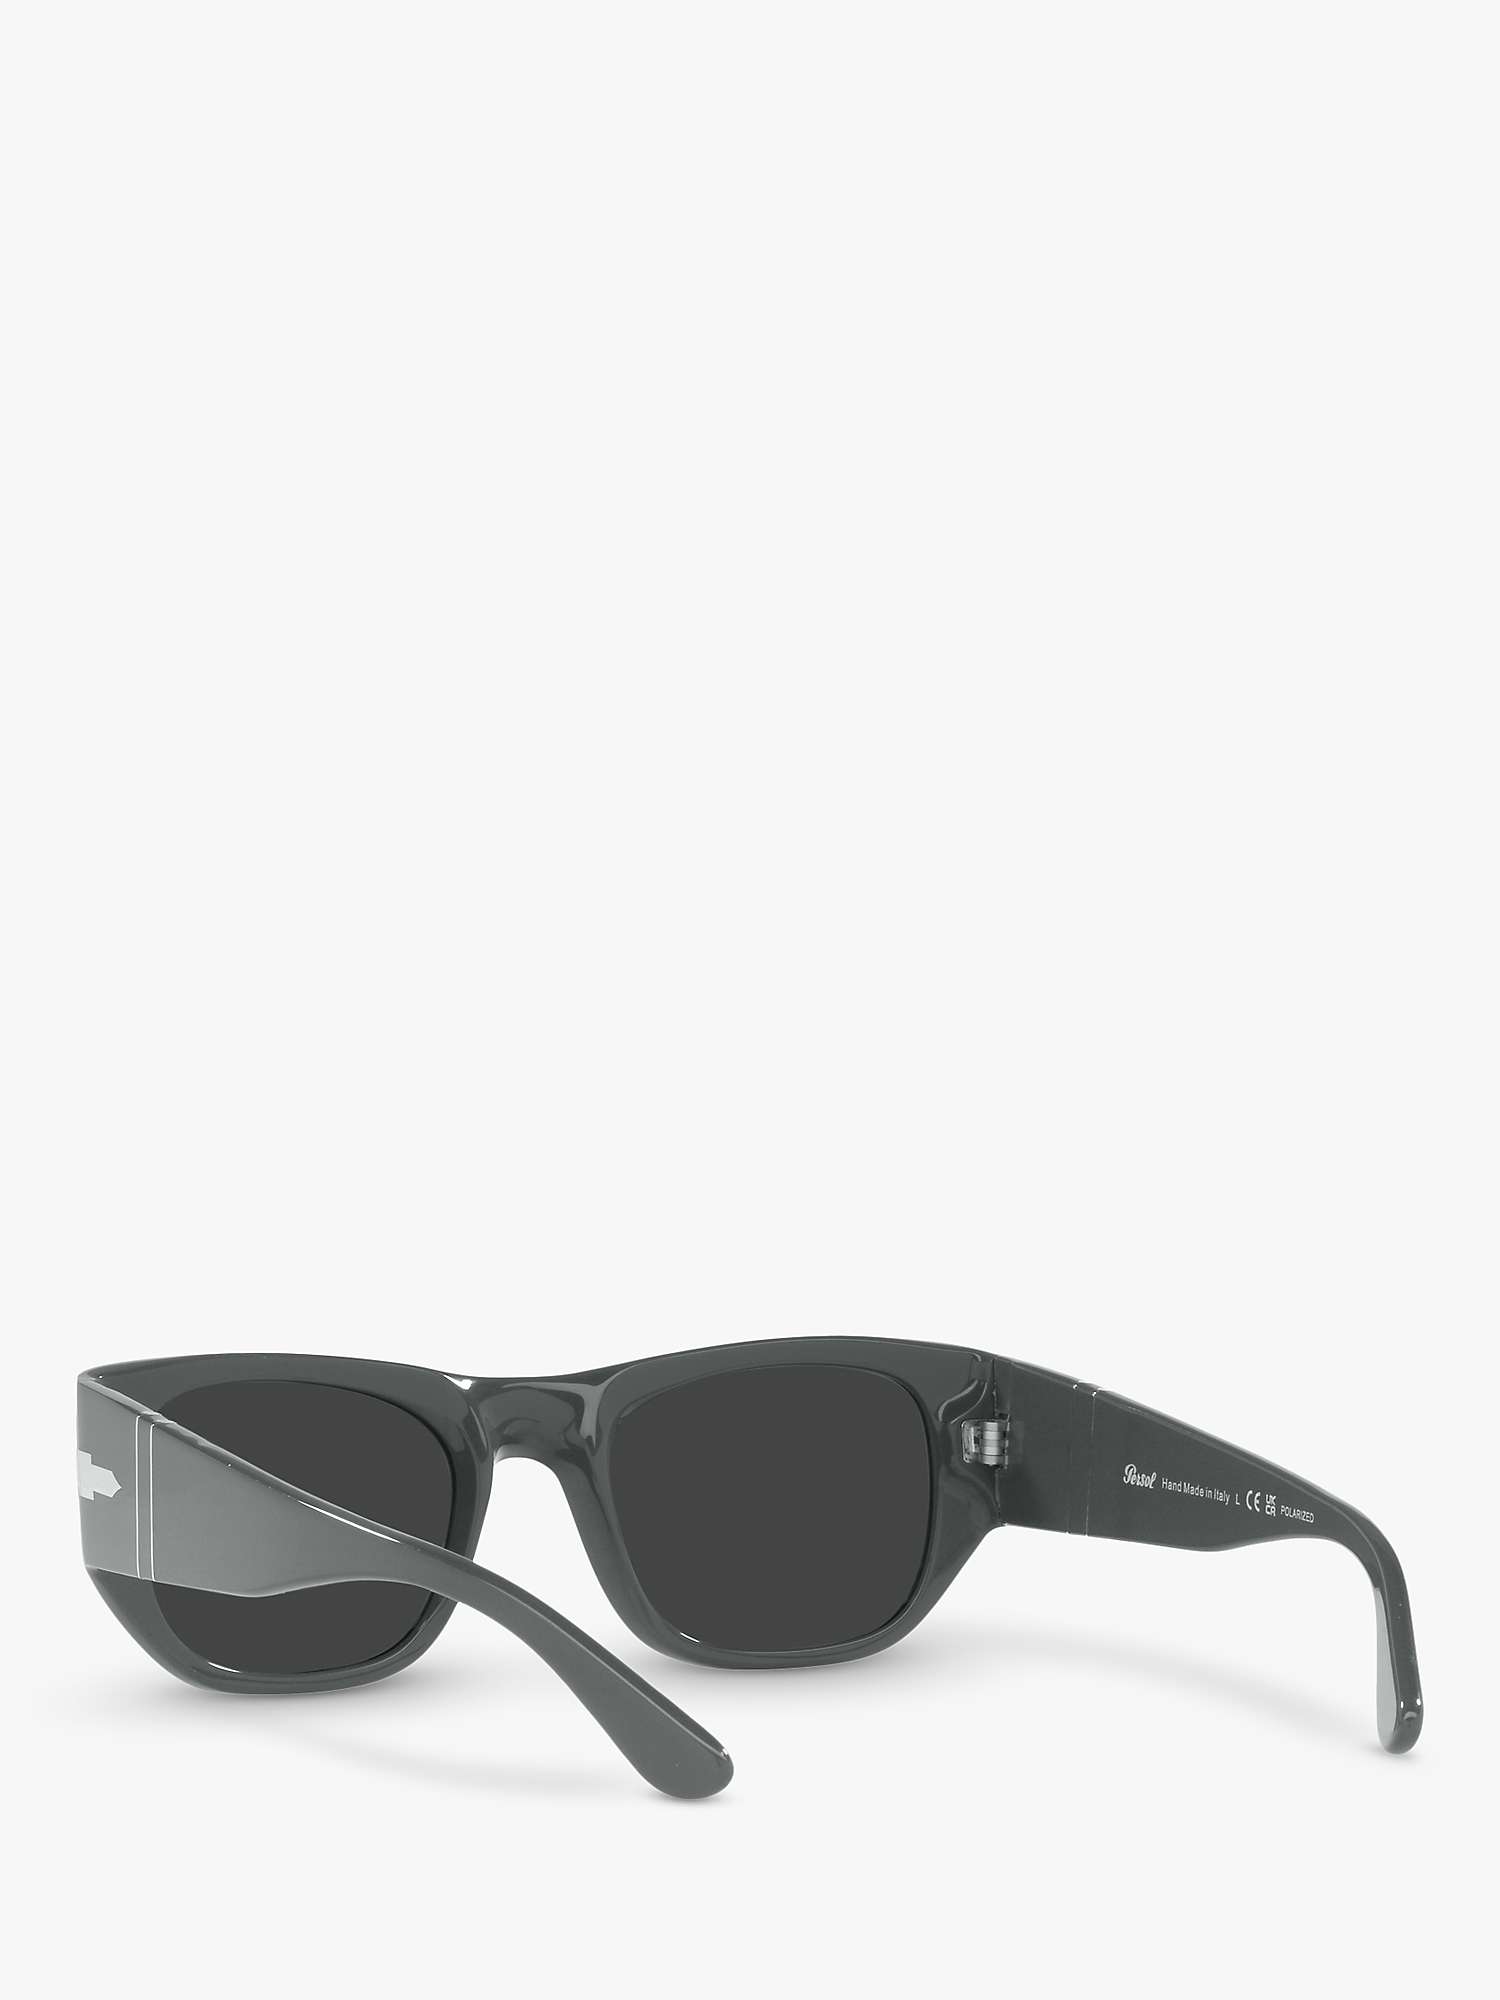 Buy Persol PO3308S Unisex Polarised Square Sunglasses, Grey Online at johnlewis.com